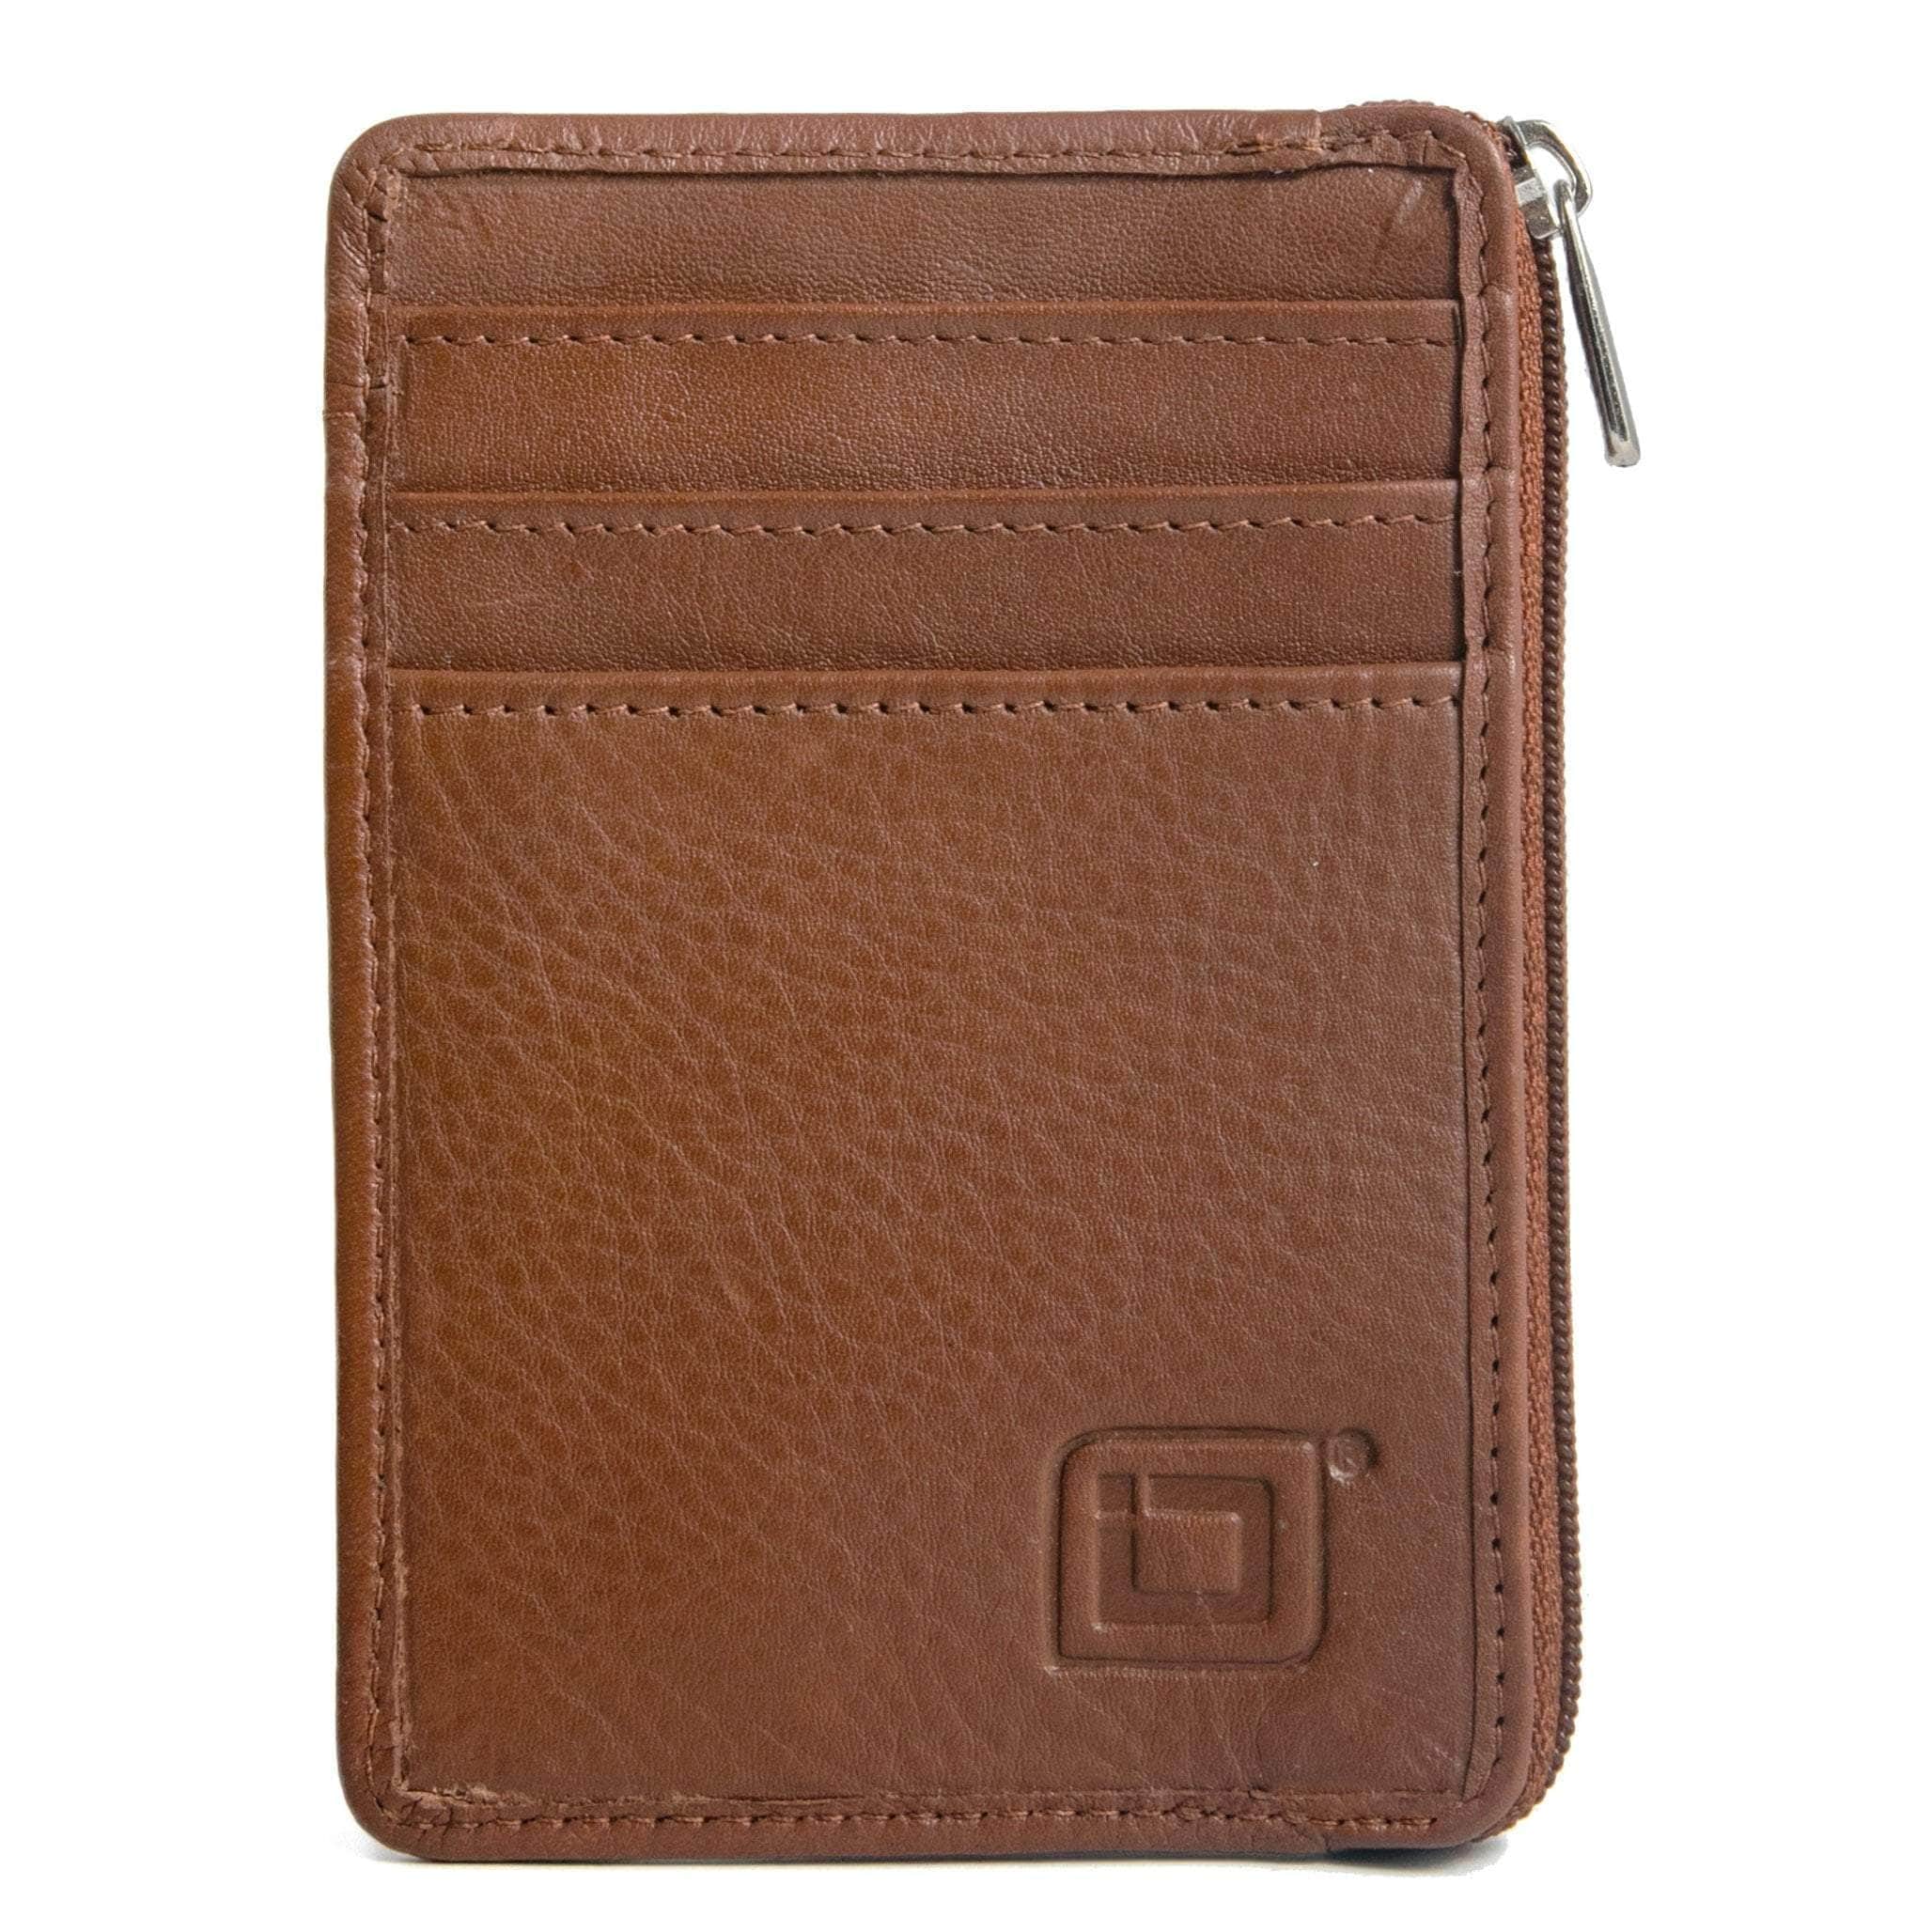 Leather RFID Minimalist Wallet -The Mini Wallet